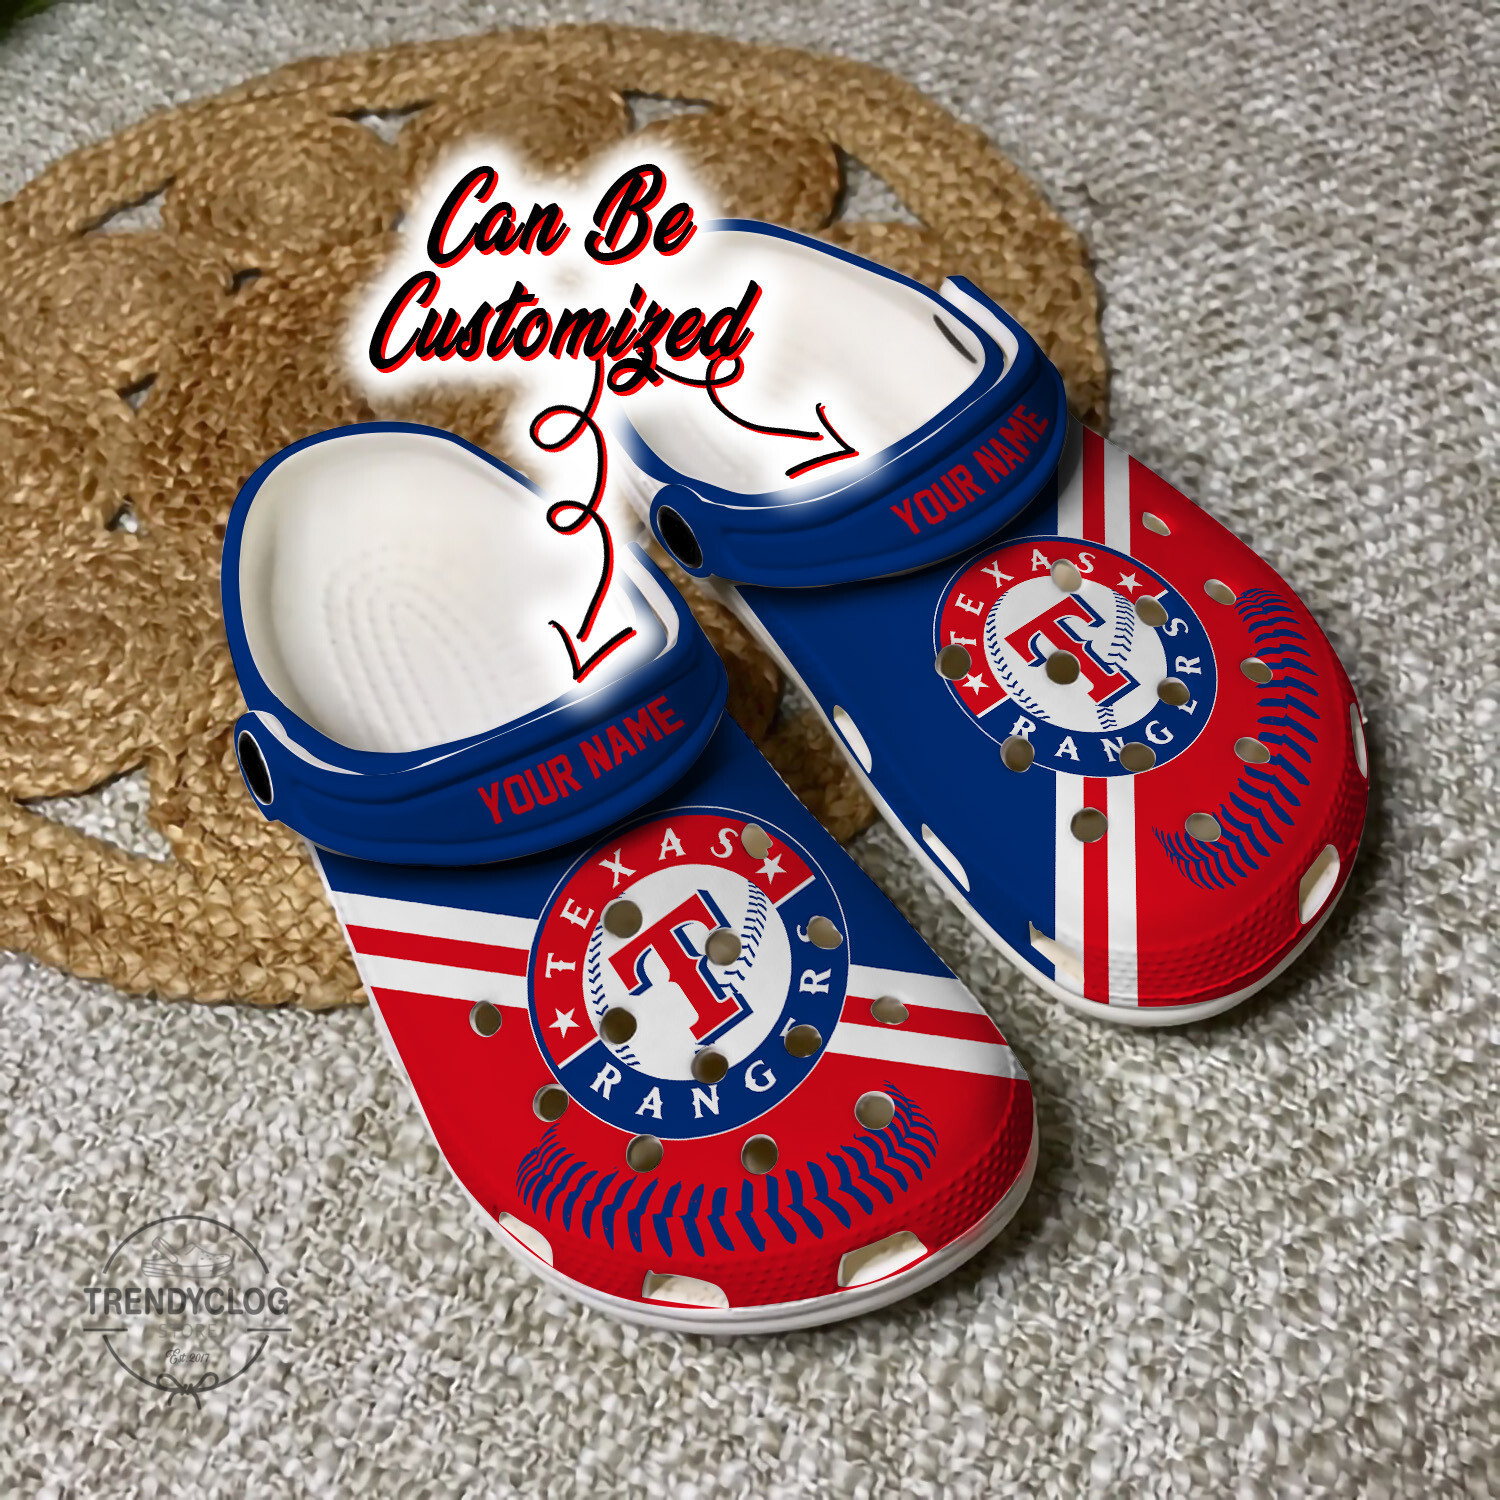 Baseball Crocs TRangers Personalized Baseball Logo Team Clog Shoes